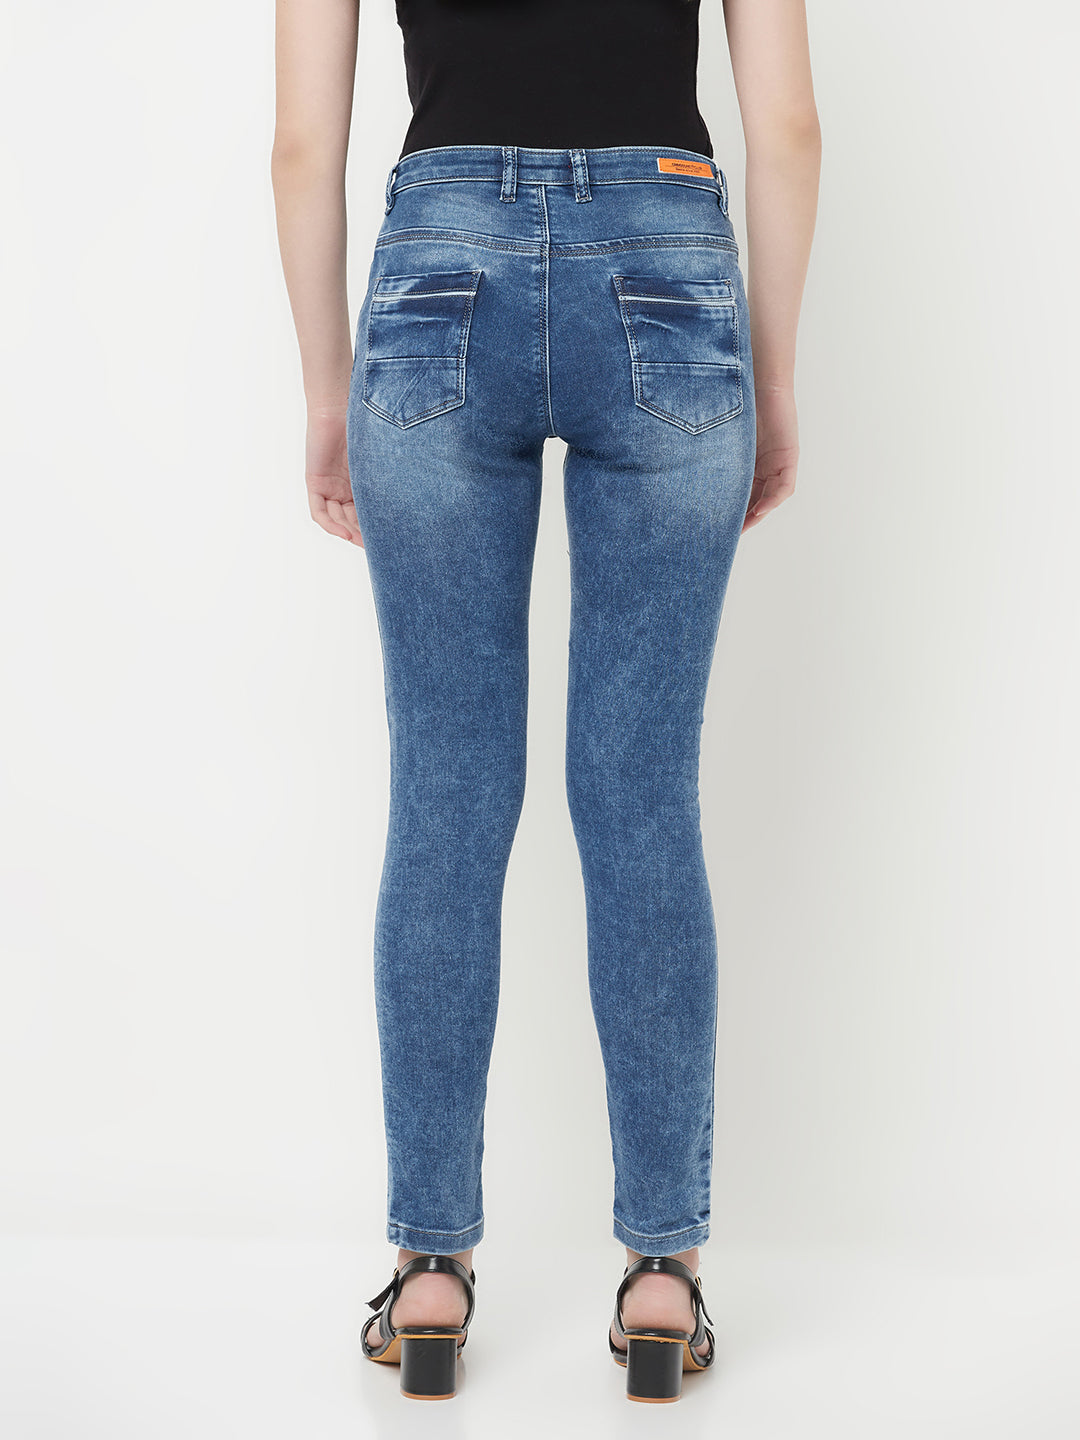 Blue Light Fade Jeans - Women Jeans